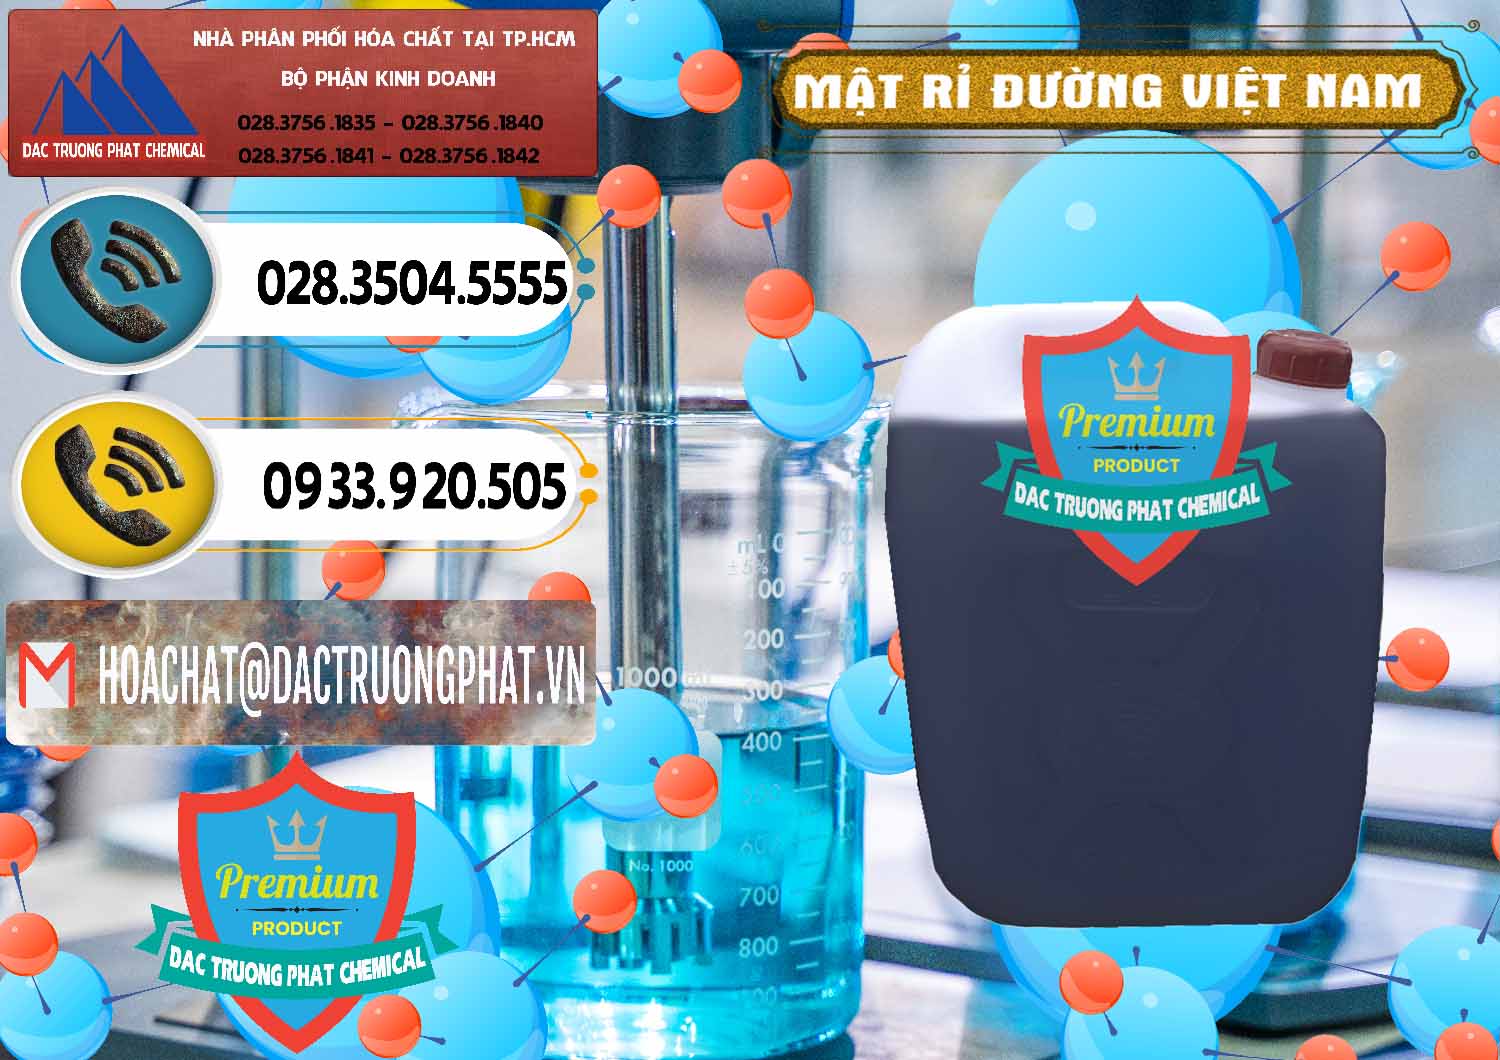 Công ty phân phối ( bán ) Mật Rỉ Đường Việt Nam - 0306 - Công ty chuyên bán - cung cấp hóa chất tại TP.HCM - hoachatdetnhuom.vn